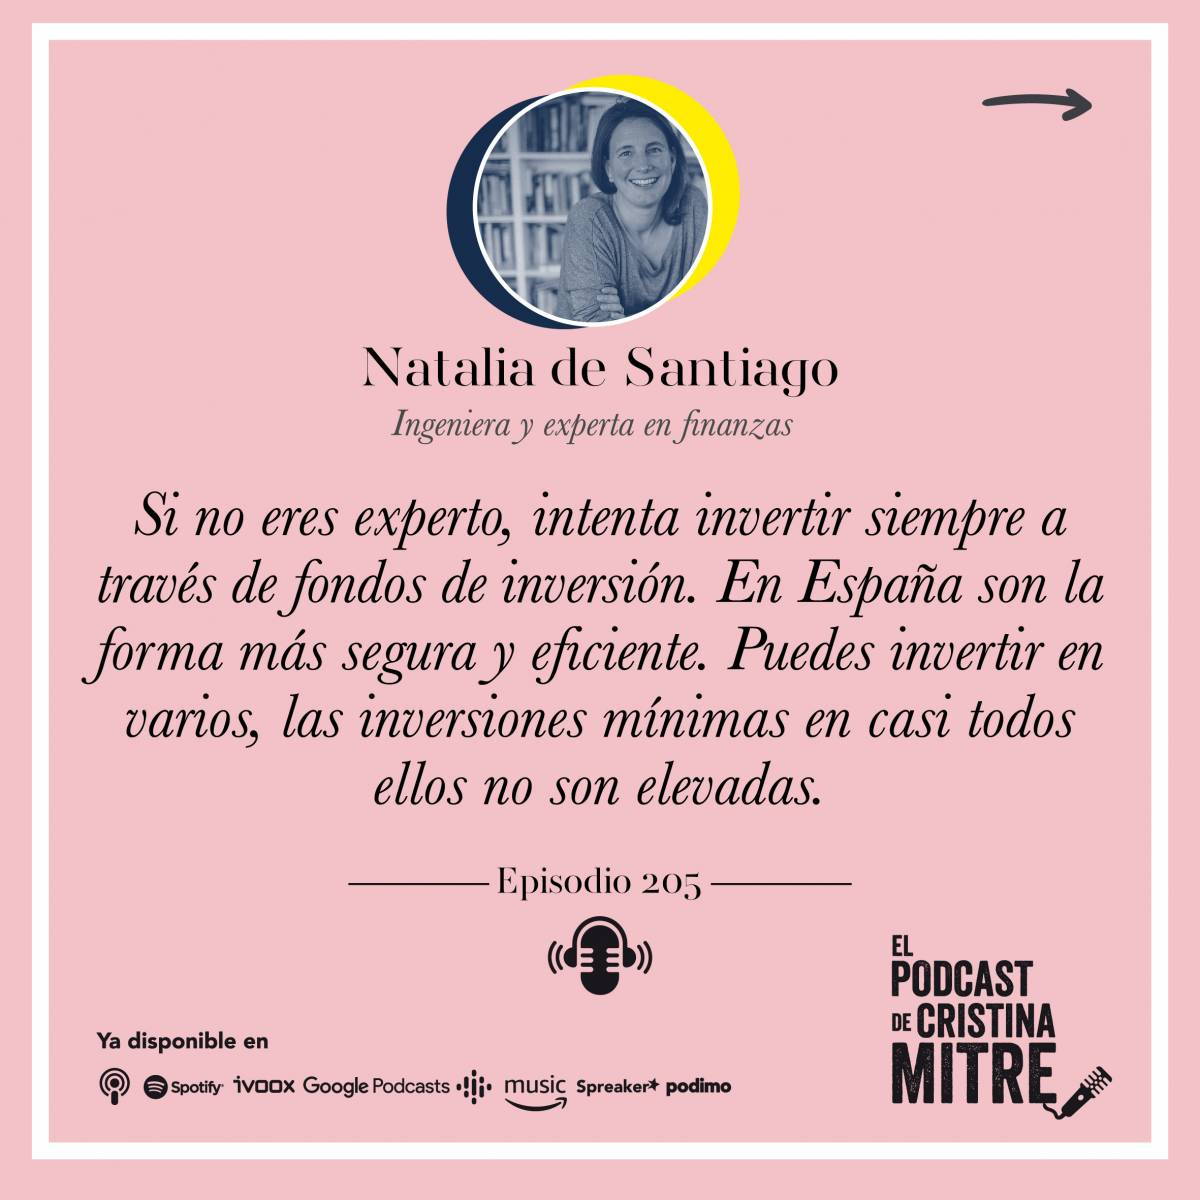 Podcast Cristina Mitre Natalia de Santiago fondos de inversion